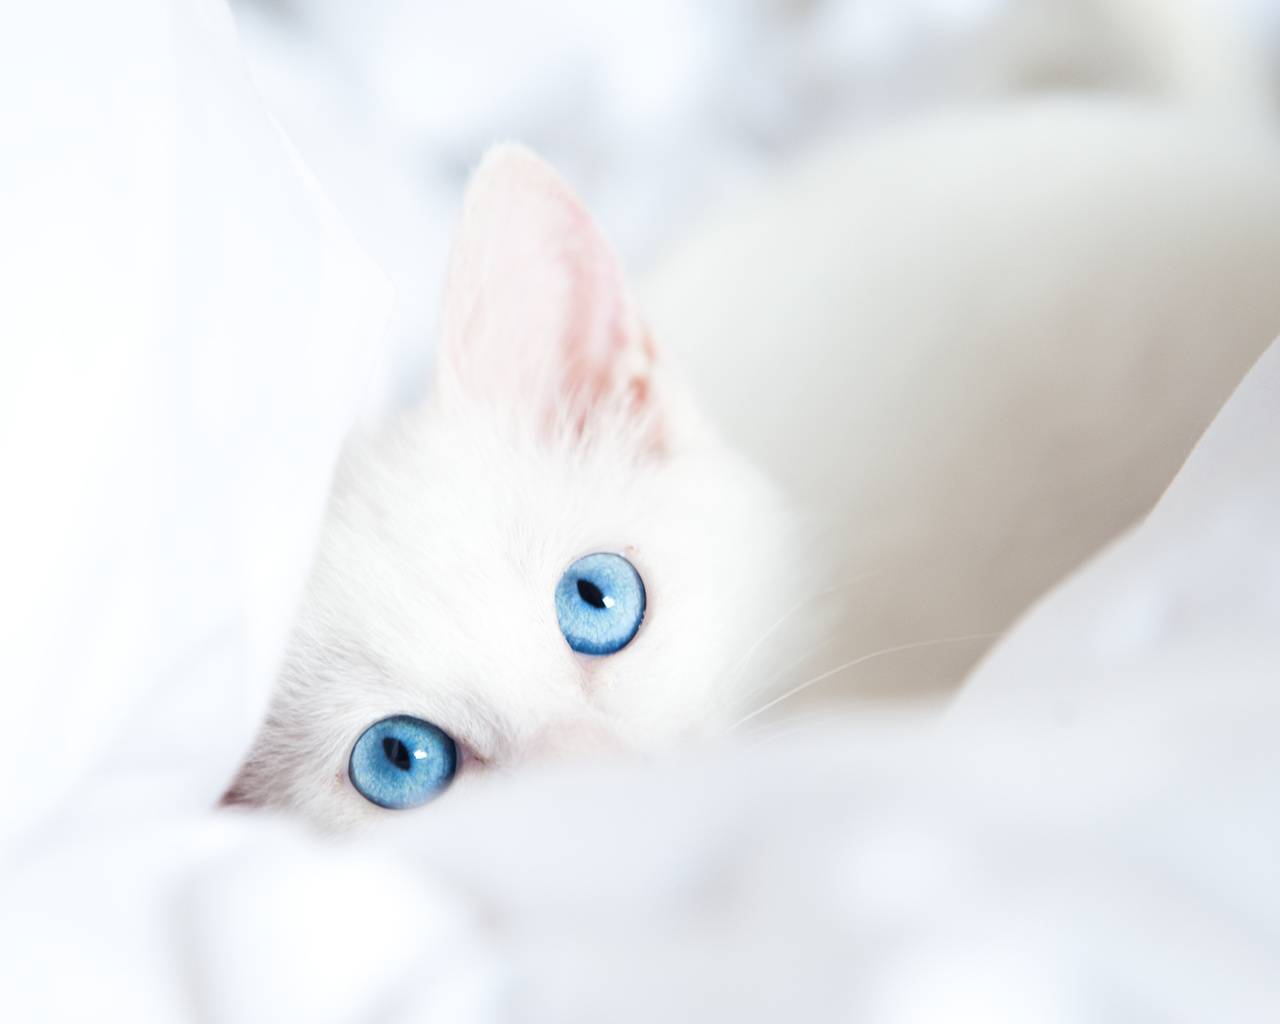 Белая кошка с голубыми глазами – что это за порода, бывают ли голубоглазыми черные или рыжие коты?